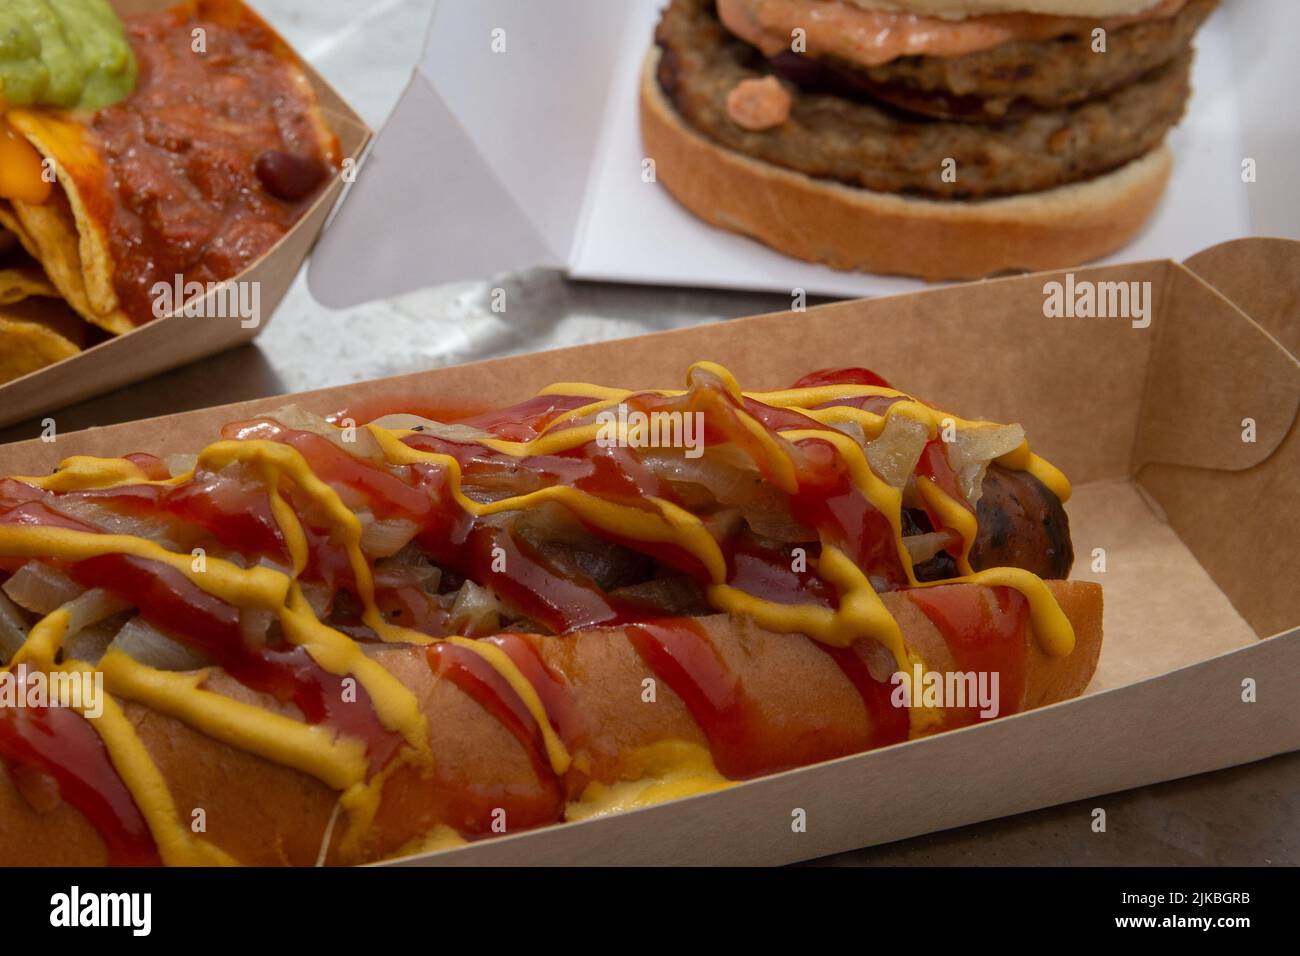 Selección de comida de la calle perritos calientes, nachos de chile y sugerencia de servir hamburguesas. Foto de stock